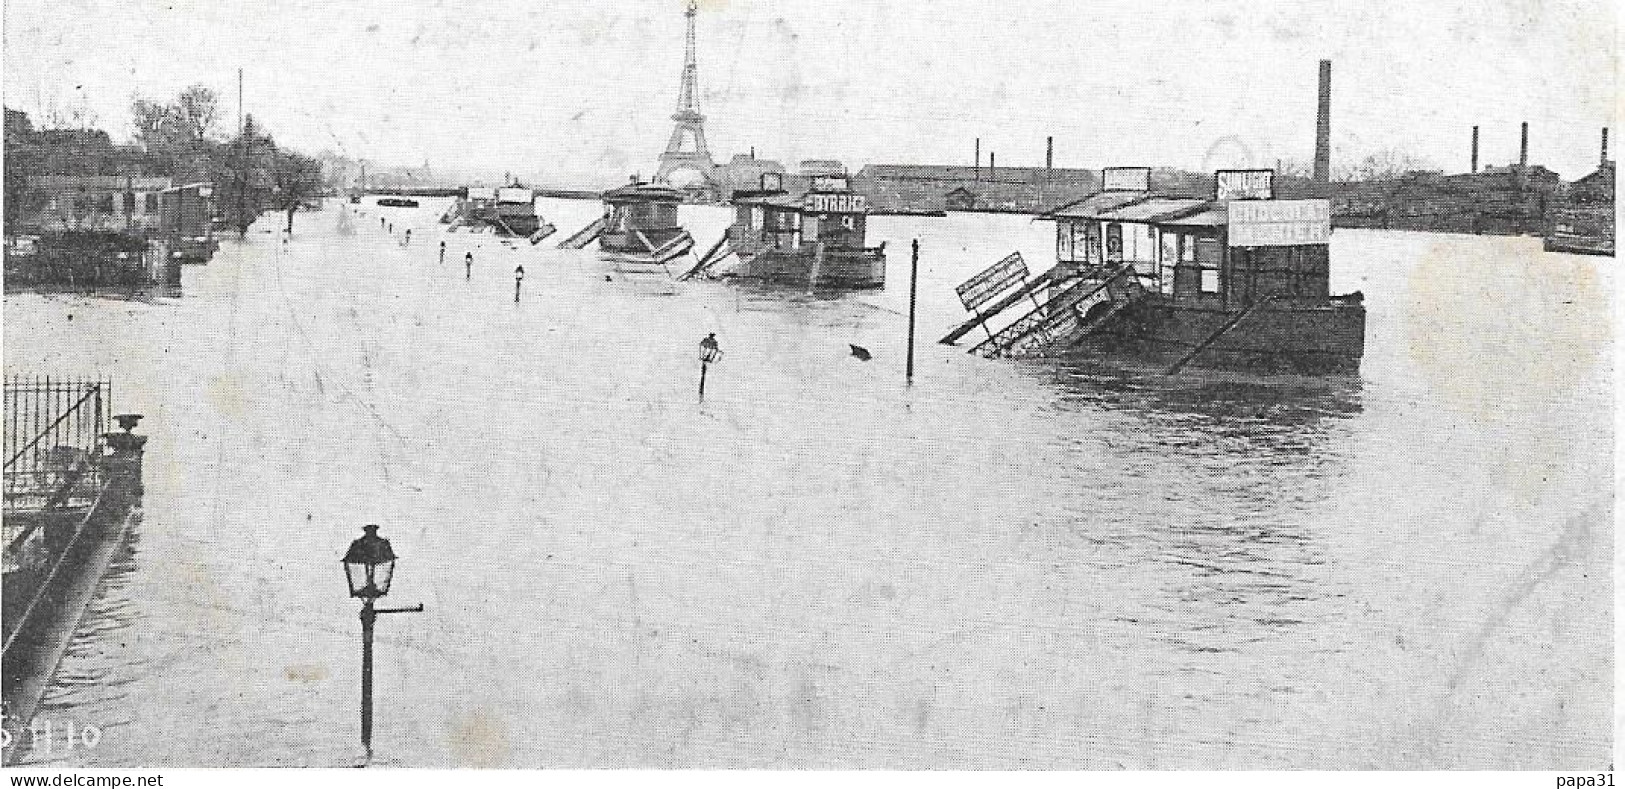 PARIS INONDE (Janvier 1910) - Pontons Des Bateaux Parisiens  Quai D'auteuil - Paris Flood, 1910